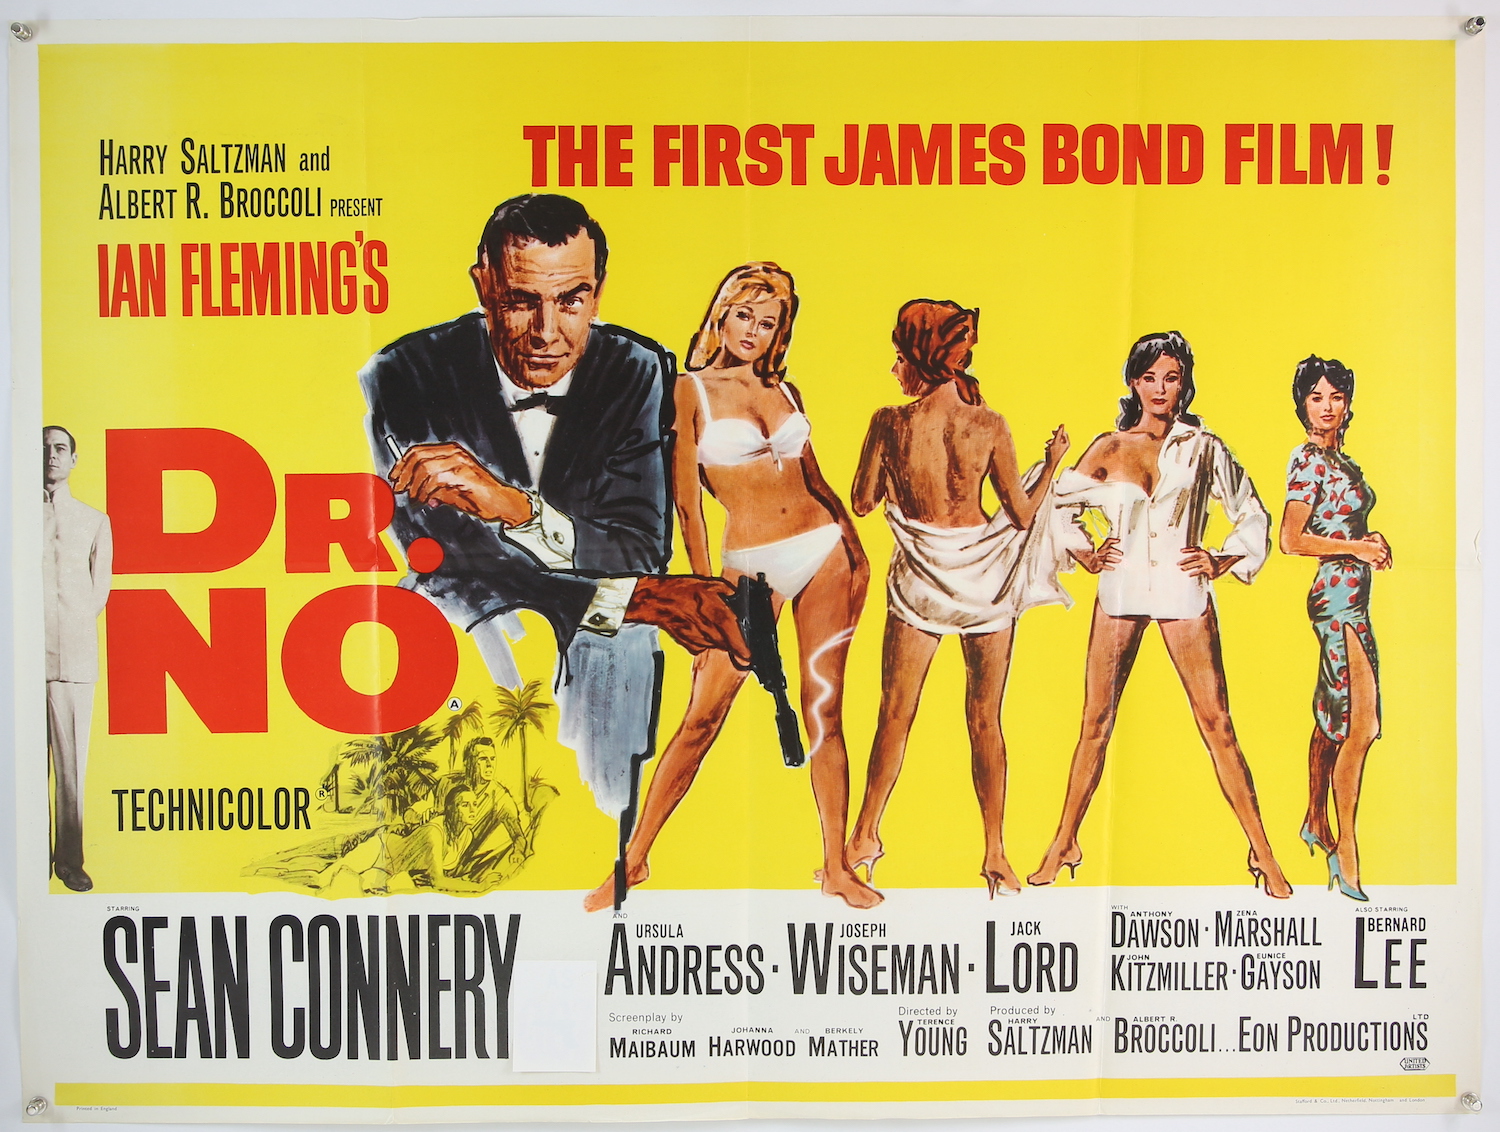 An original Dr No James Bond film poster